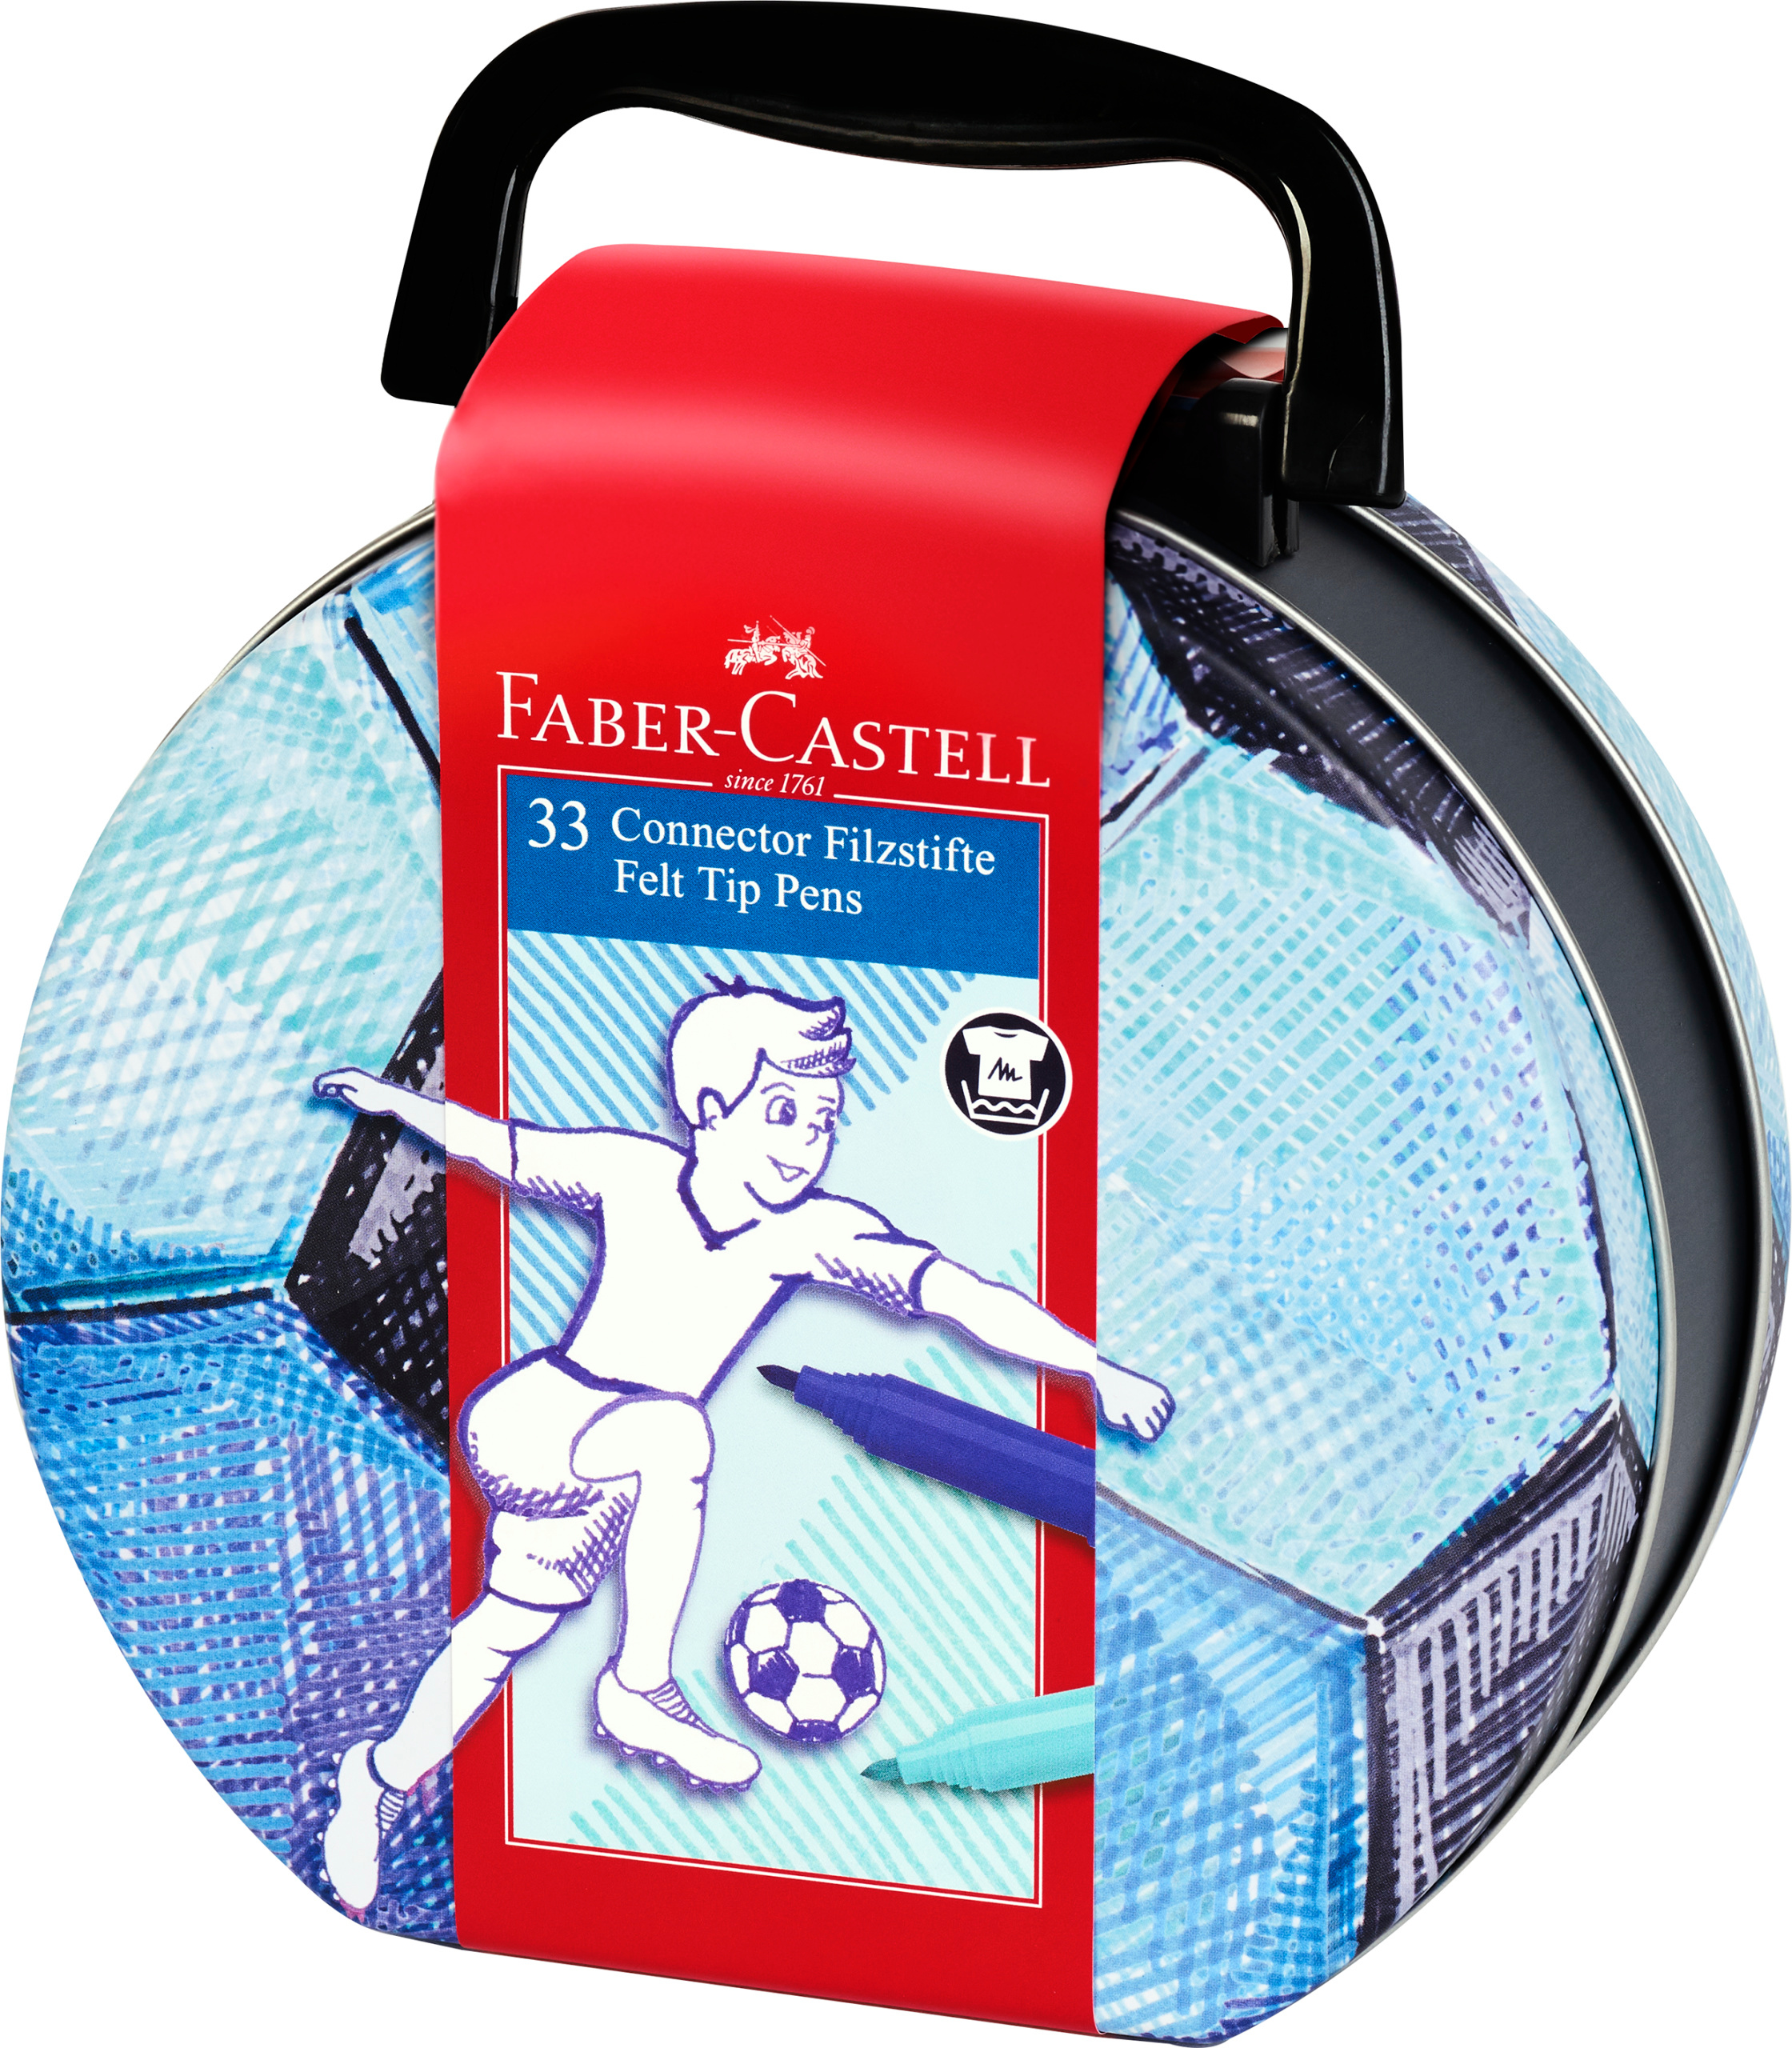 FABER-CASTELL Connector Feutres 155538 Boite de foot Boite de foot